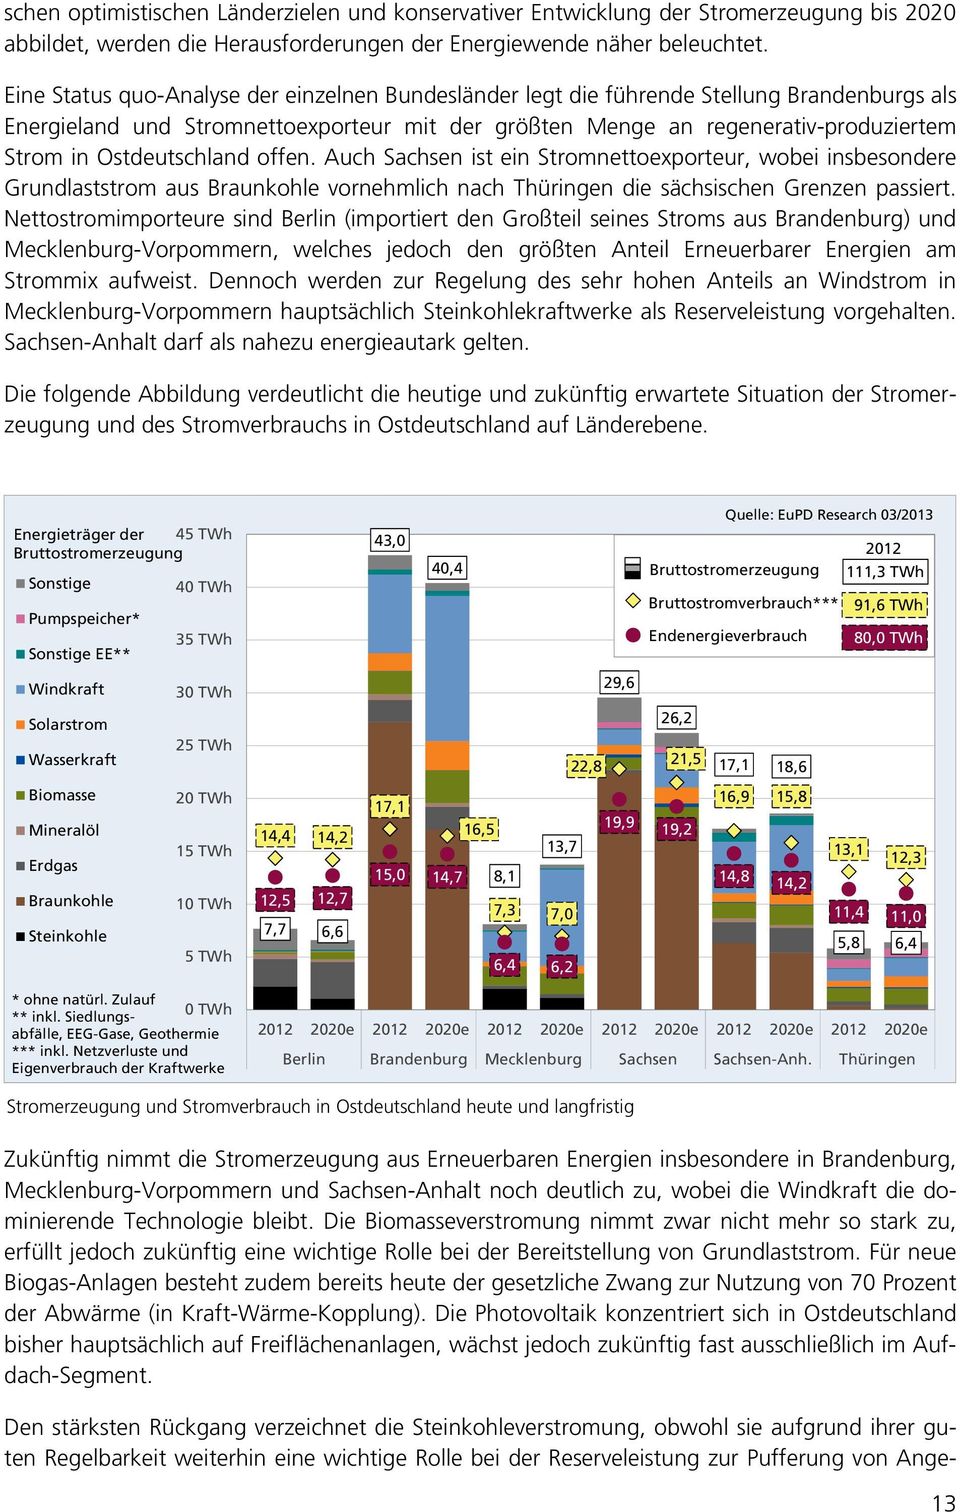 Ostdeutschland offen. Auch Sachsen ist ein Stromnettoexporteur, wobei insbesondere Grundlaststrom aus Braunkohle vornehmlich nach Thüringen die sächsischen Grenzen passiert.